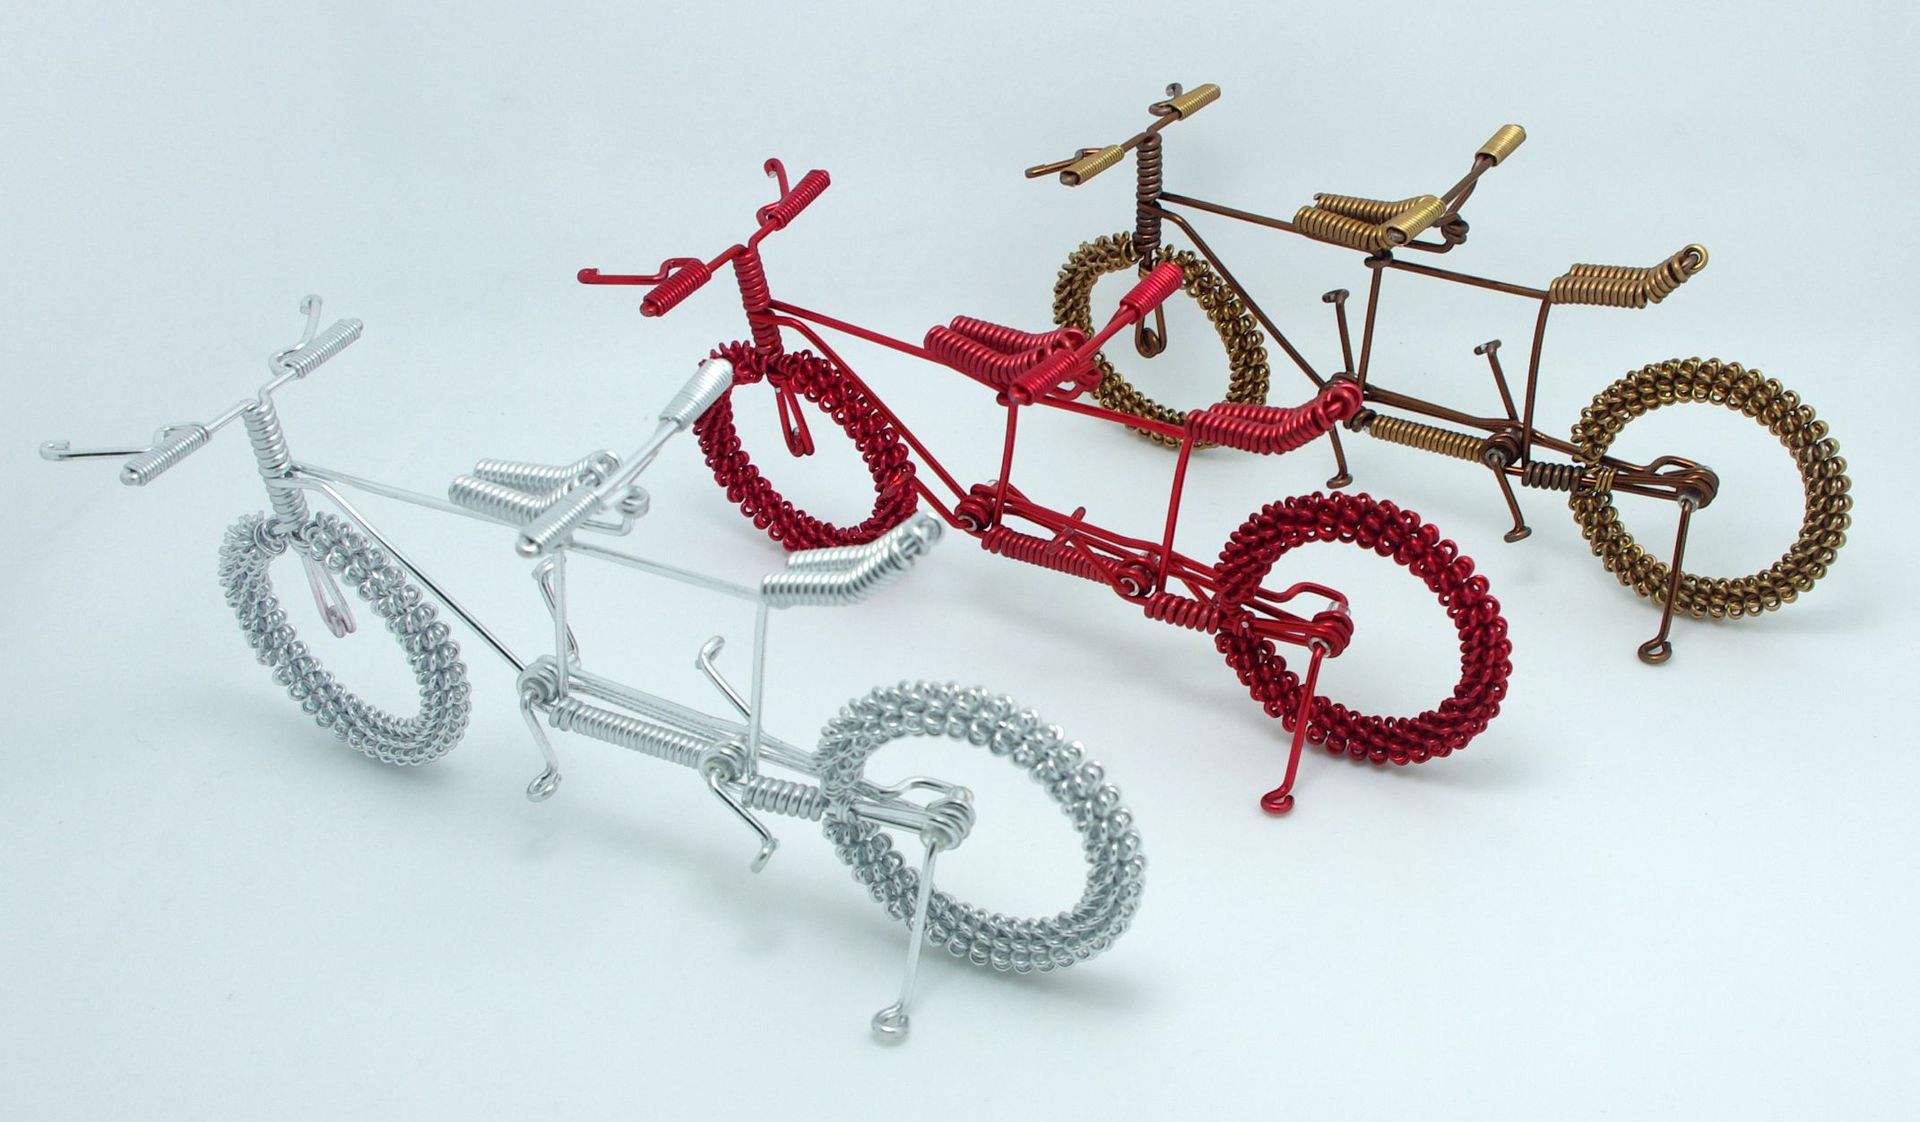 还有这种用铁丝编织的 自行车工艺品,看起来很棒,买回来也只能摆放